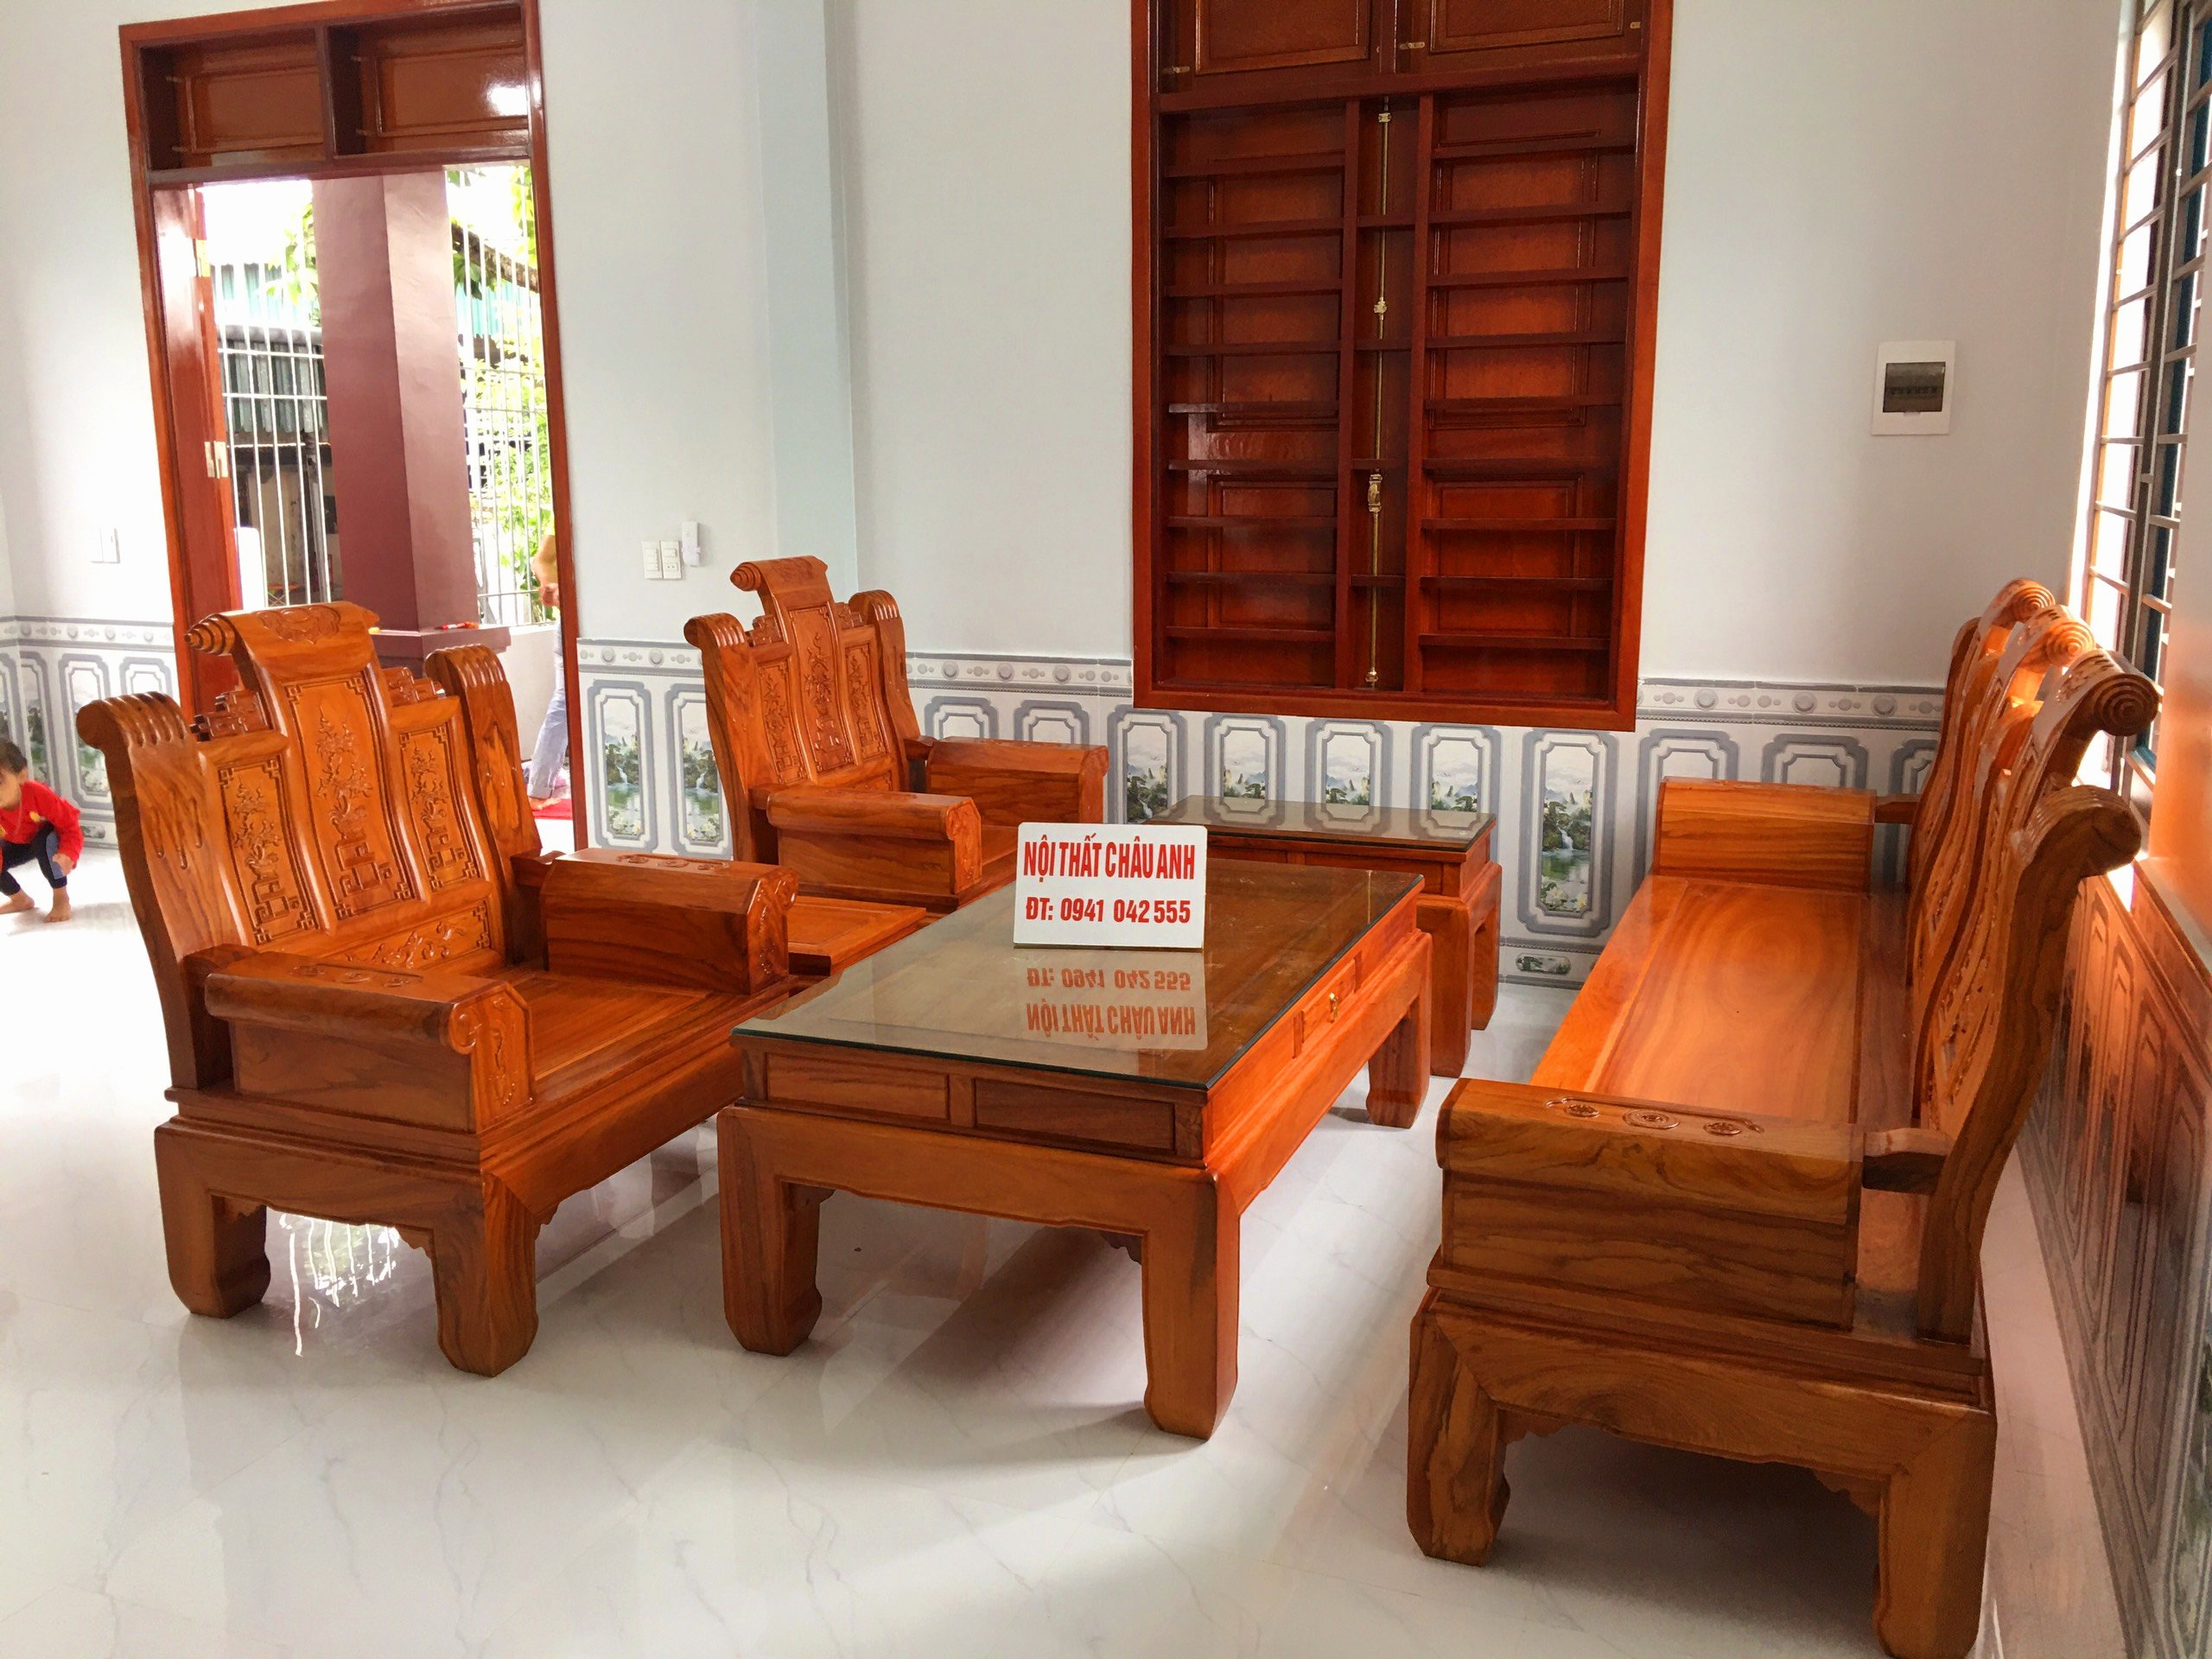 Bộ bàn ghế Cuốn Thư gõ đỏ siêu VIP cho phòng khách BG276 là sự lựa chọn hoàn hảo cho những ai đang tìm kiếm một bộ bàn ghế sang trọng và đẳng cấp. Với chất liệu gỗ đỏ bền chặt, thiết kế đầy tinh tế và hiện đại, bộ bàn ghế này sẽ là điểm nhấn cho không gian phòng khách của bạn.